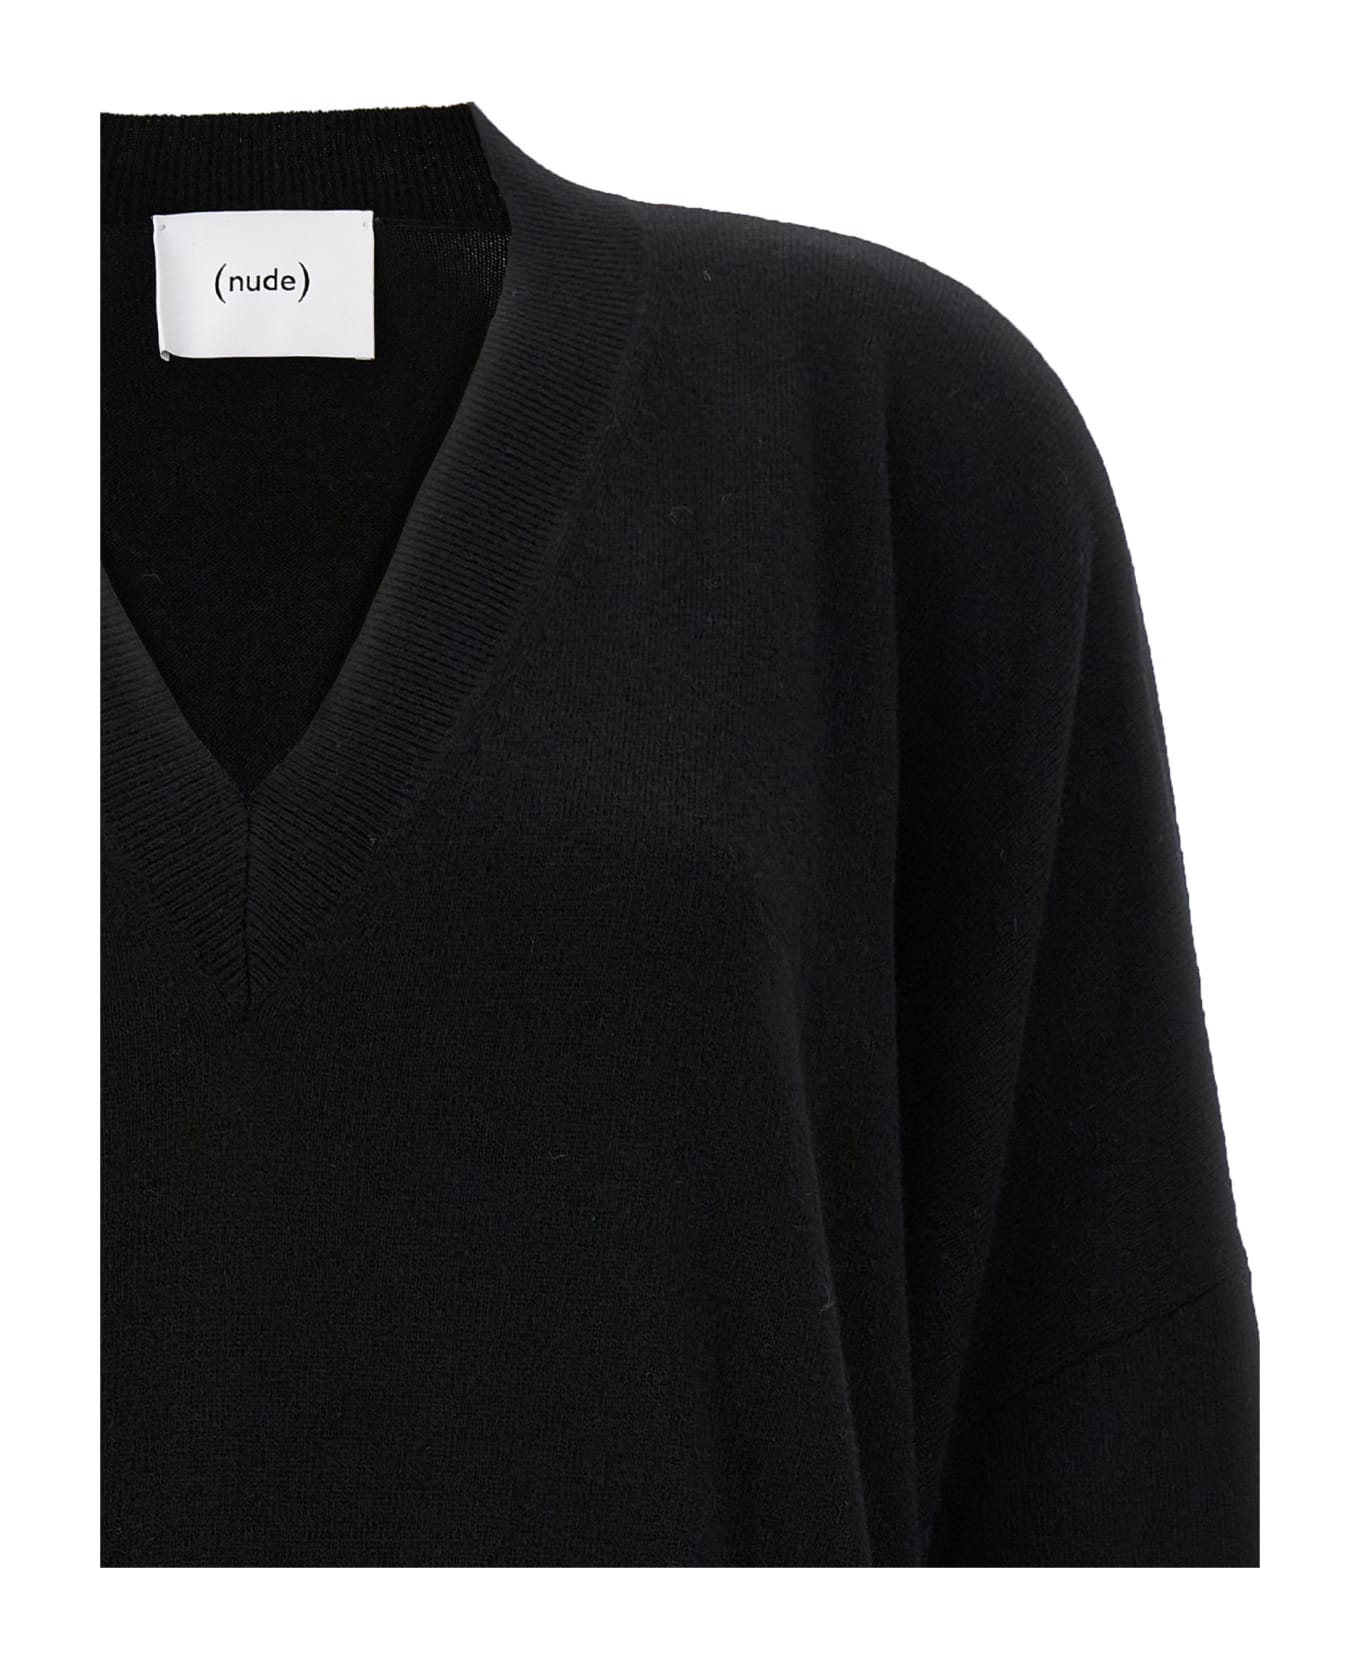 (nude) Oversize Sweater - Black  